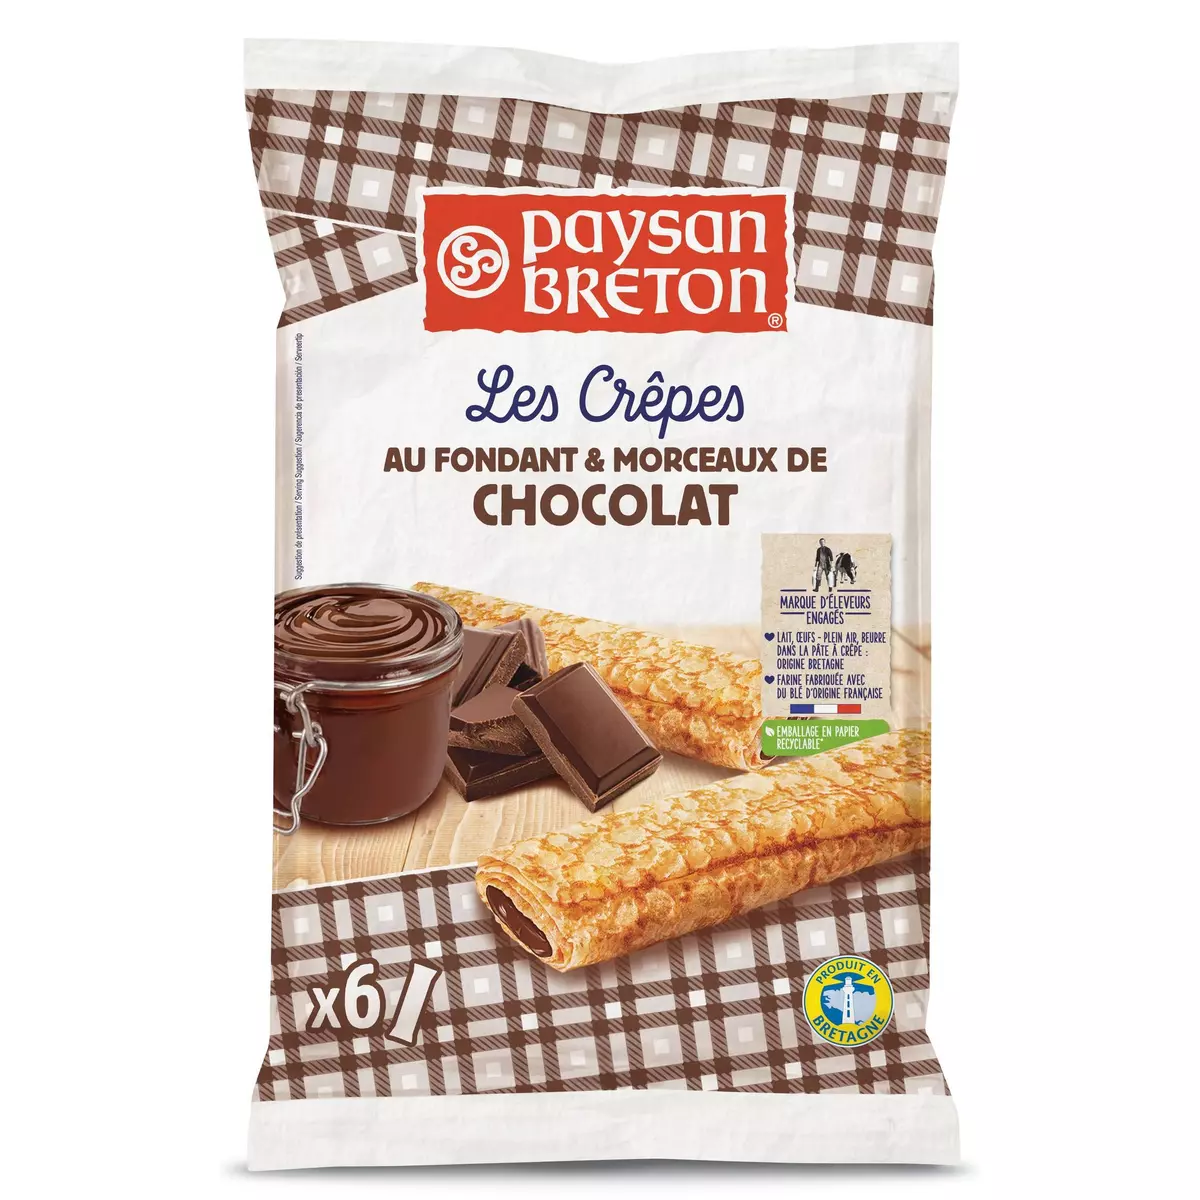 PAYSAN BRETON Breton Crêpes fourrées au fondant et morceaux de chocolat  6 crêpes 180g